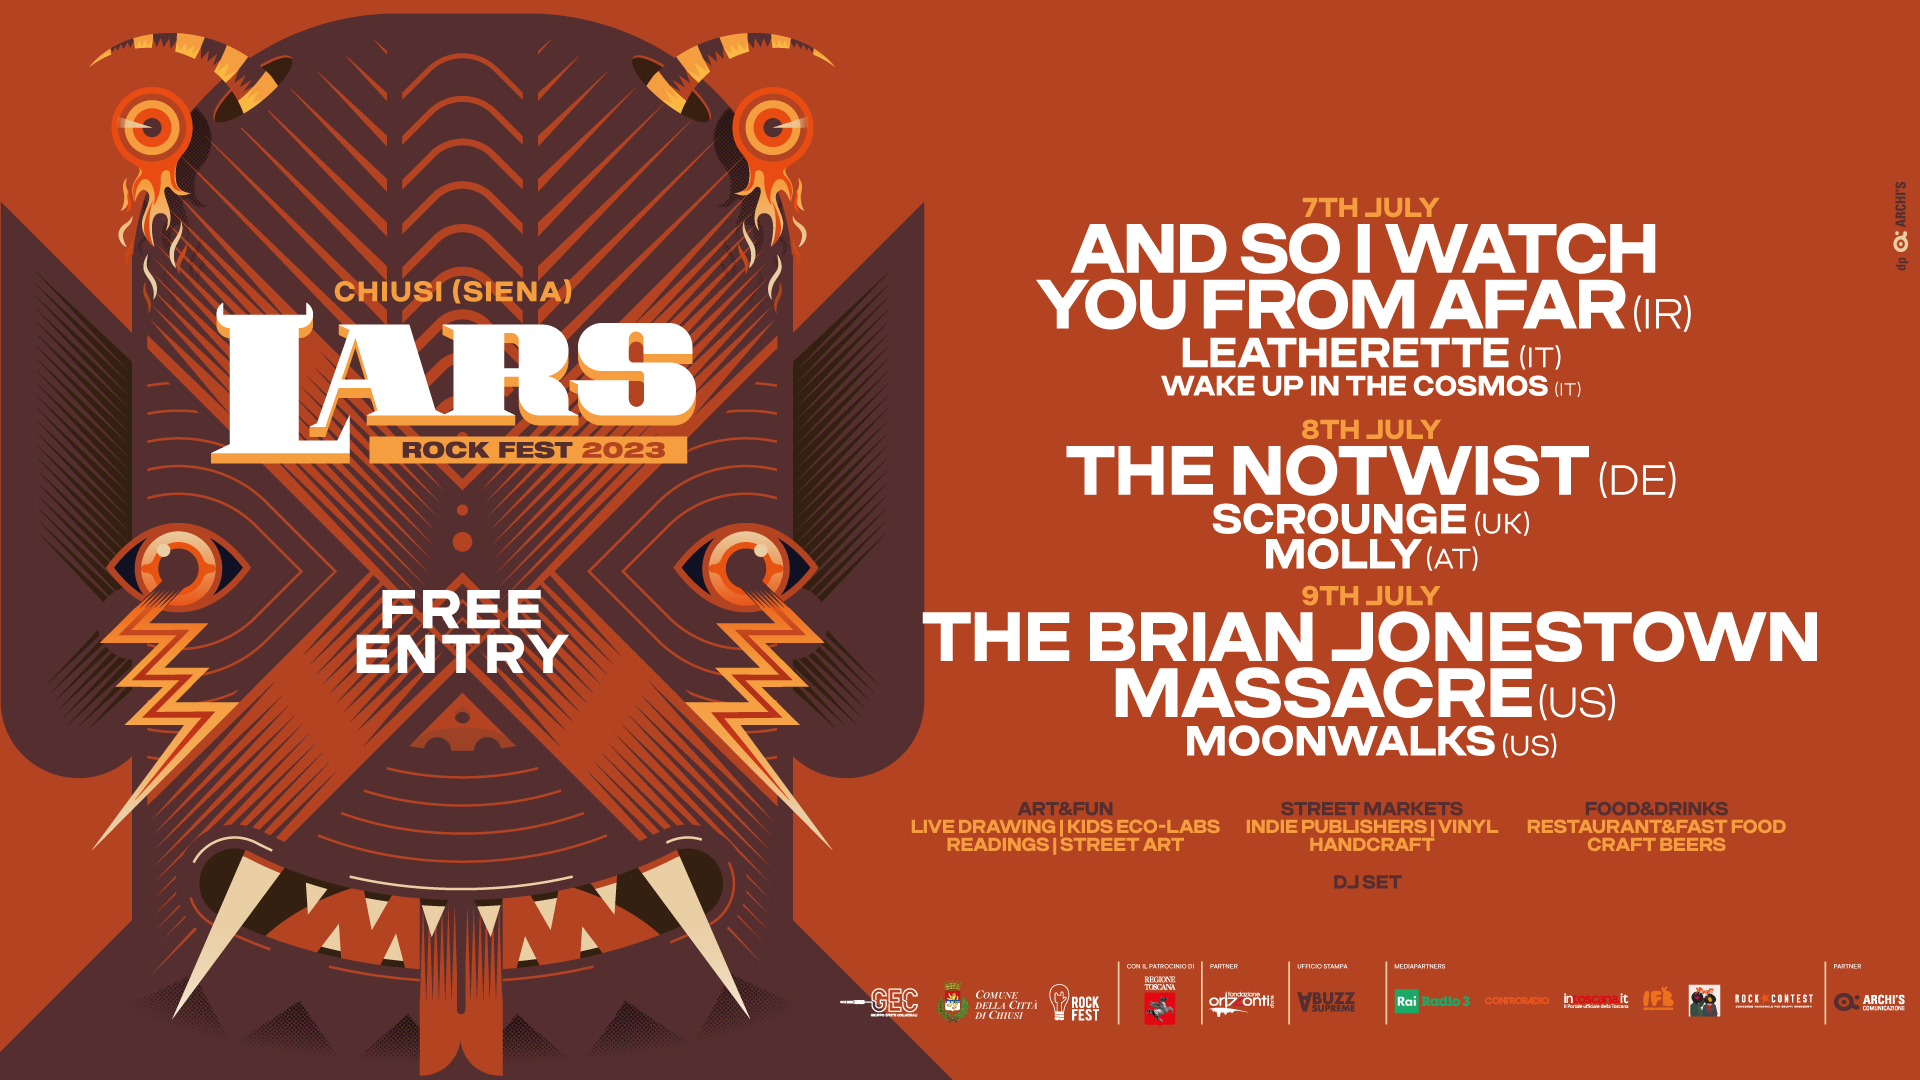 Il Lars Rock Fest torna protagonista a Chiusi. E’ la decima edizione